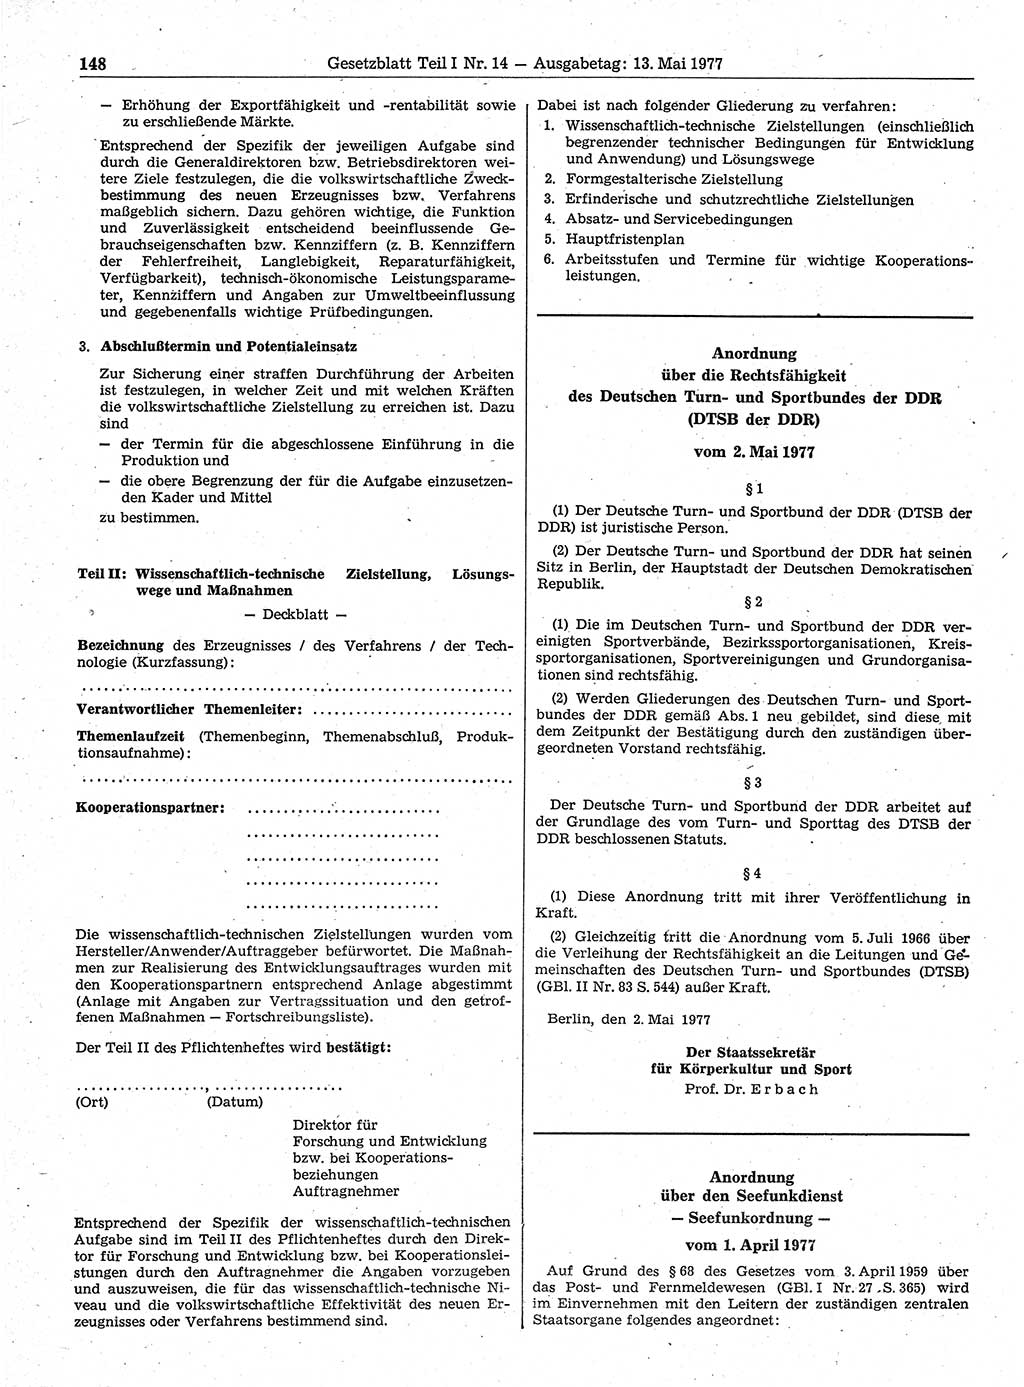 Gesetzblatt (GBl.) der Deutschen Demokratischen Republik (DDR) Teil Ⅰ 1977, Seite 148 (GBl. DDR Ⅰ 1977, S. 148)